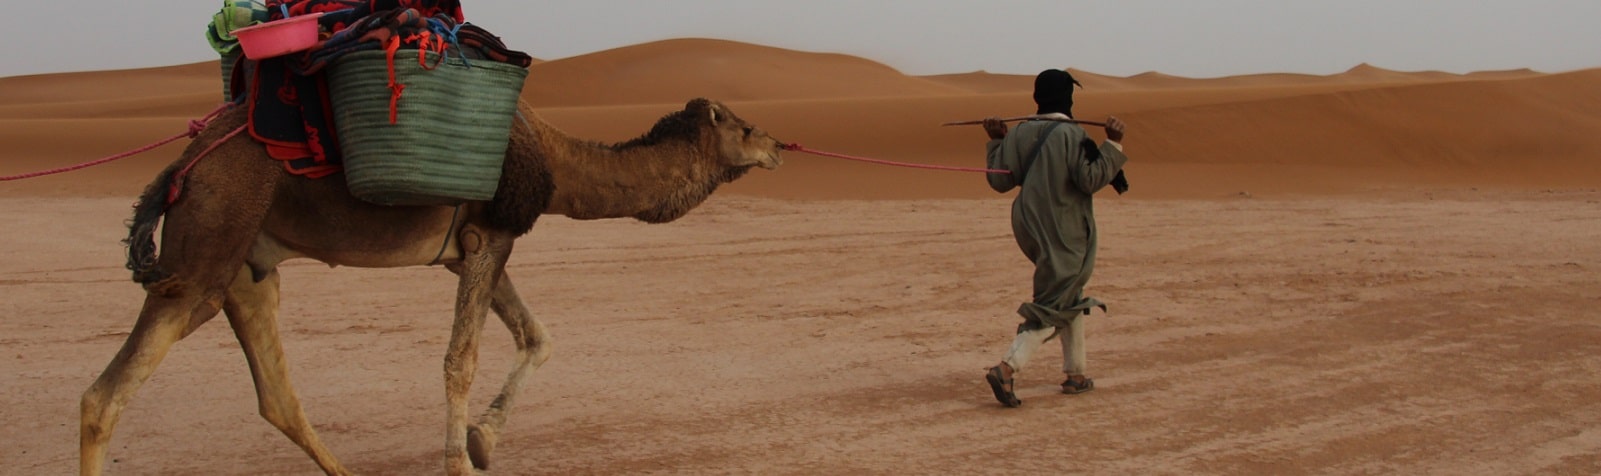 Camel trek M'hamid